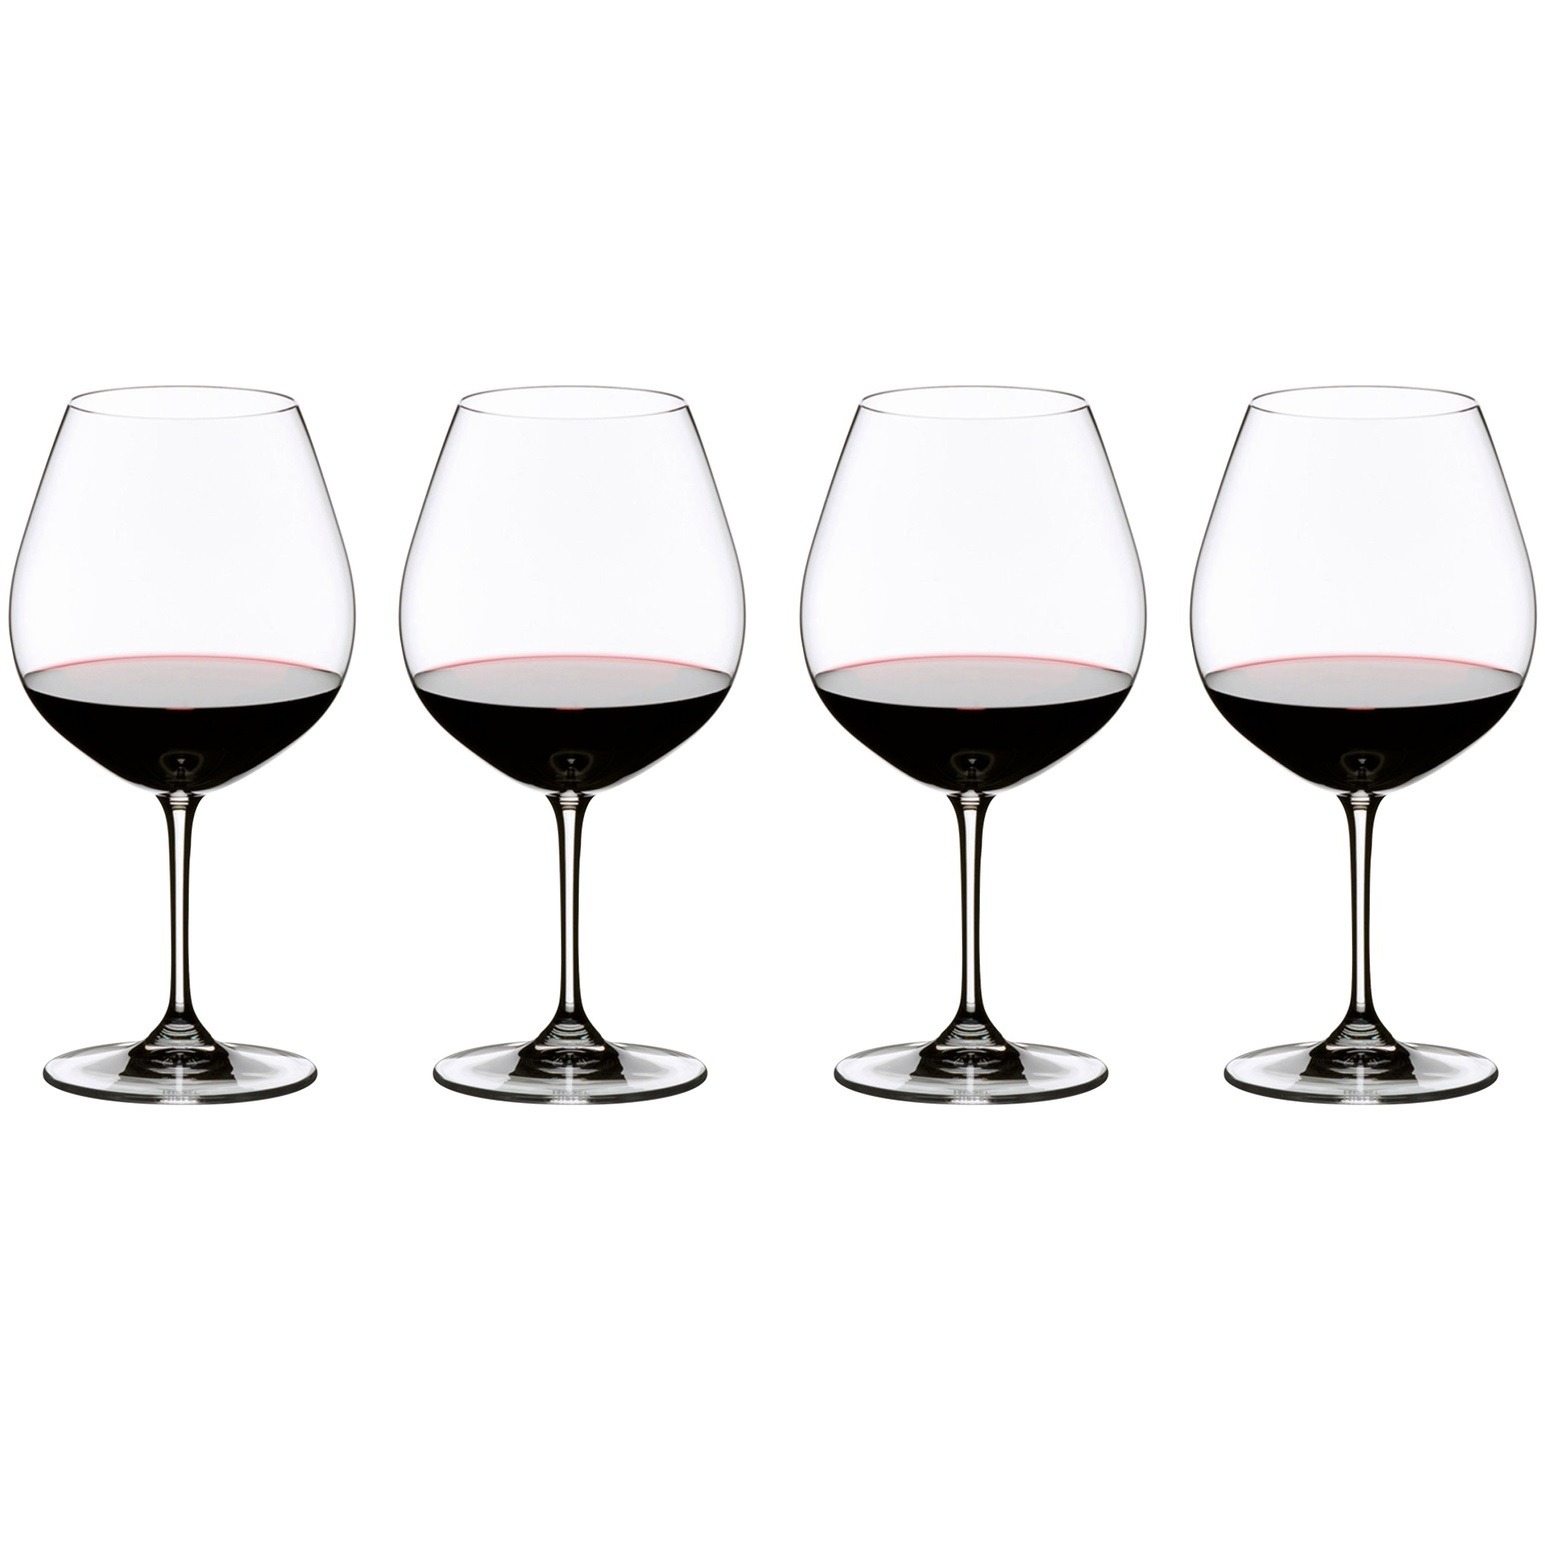 хрустальный бокал для красного вина pinot noir 950 мл winewings riedel 1234 07 Набор бокалов Riedel Vinum Pinot Noir 725 мл 4 шт